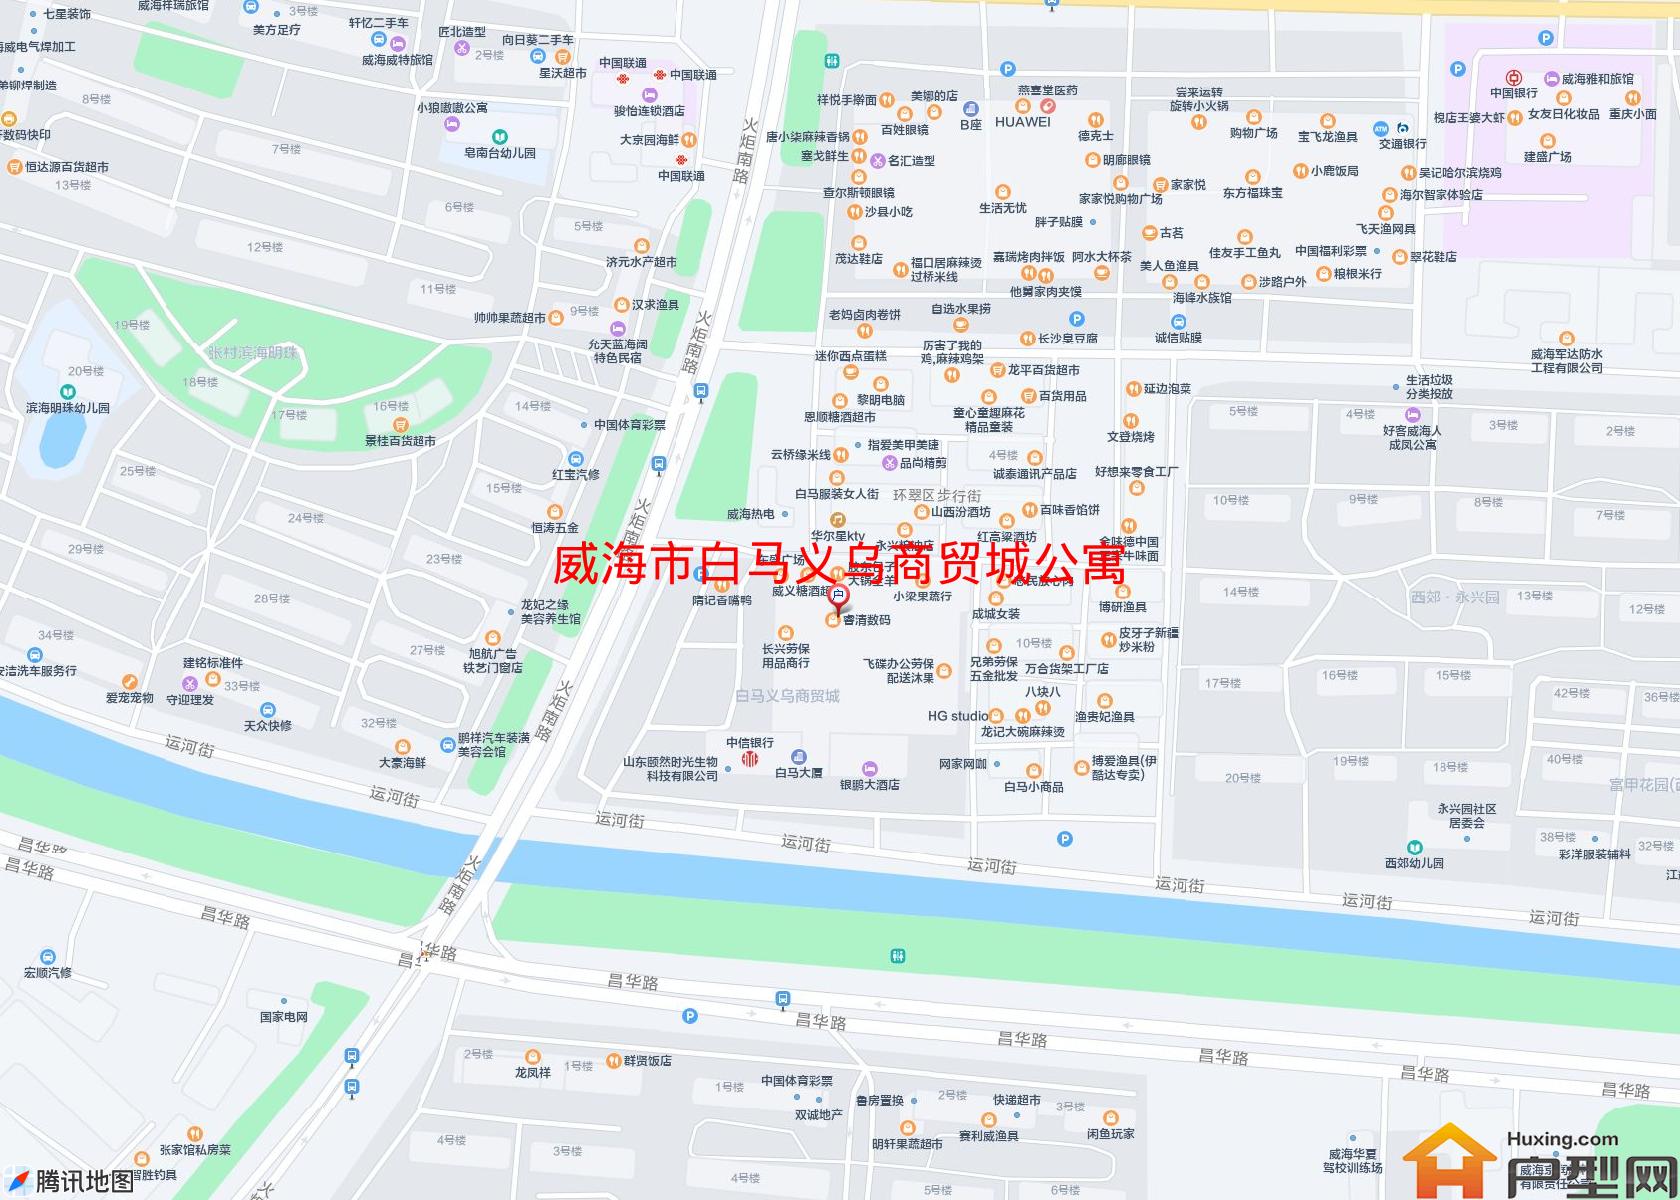 白马义乌商贸城公寓小区 - 户型网